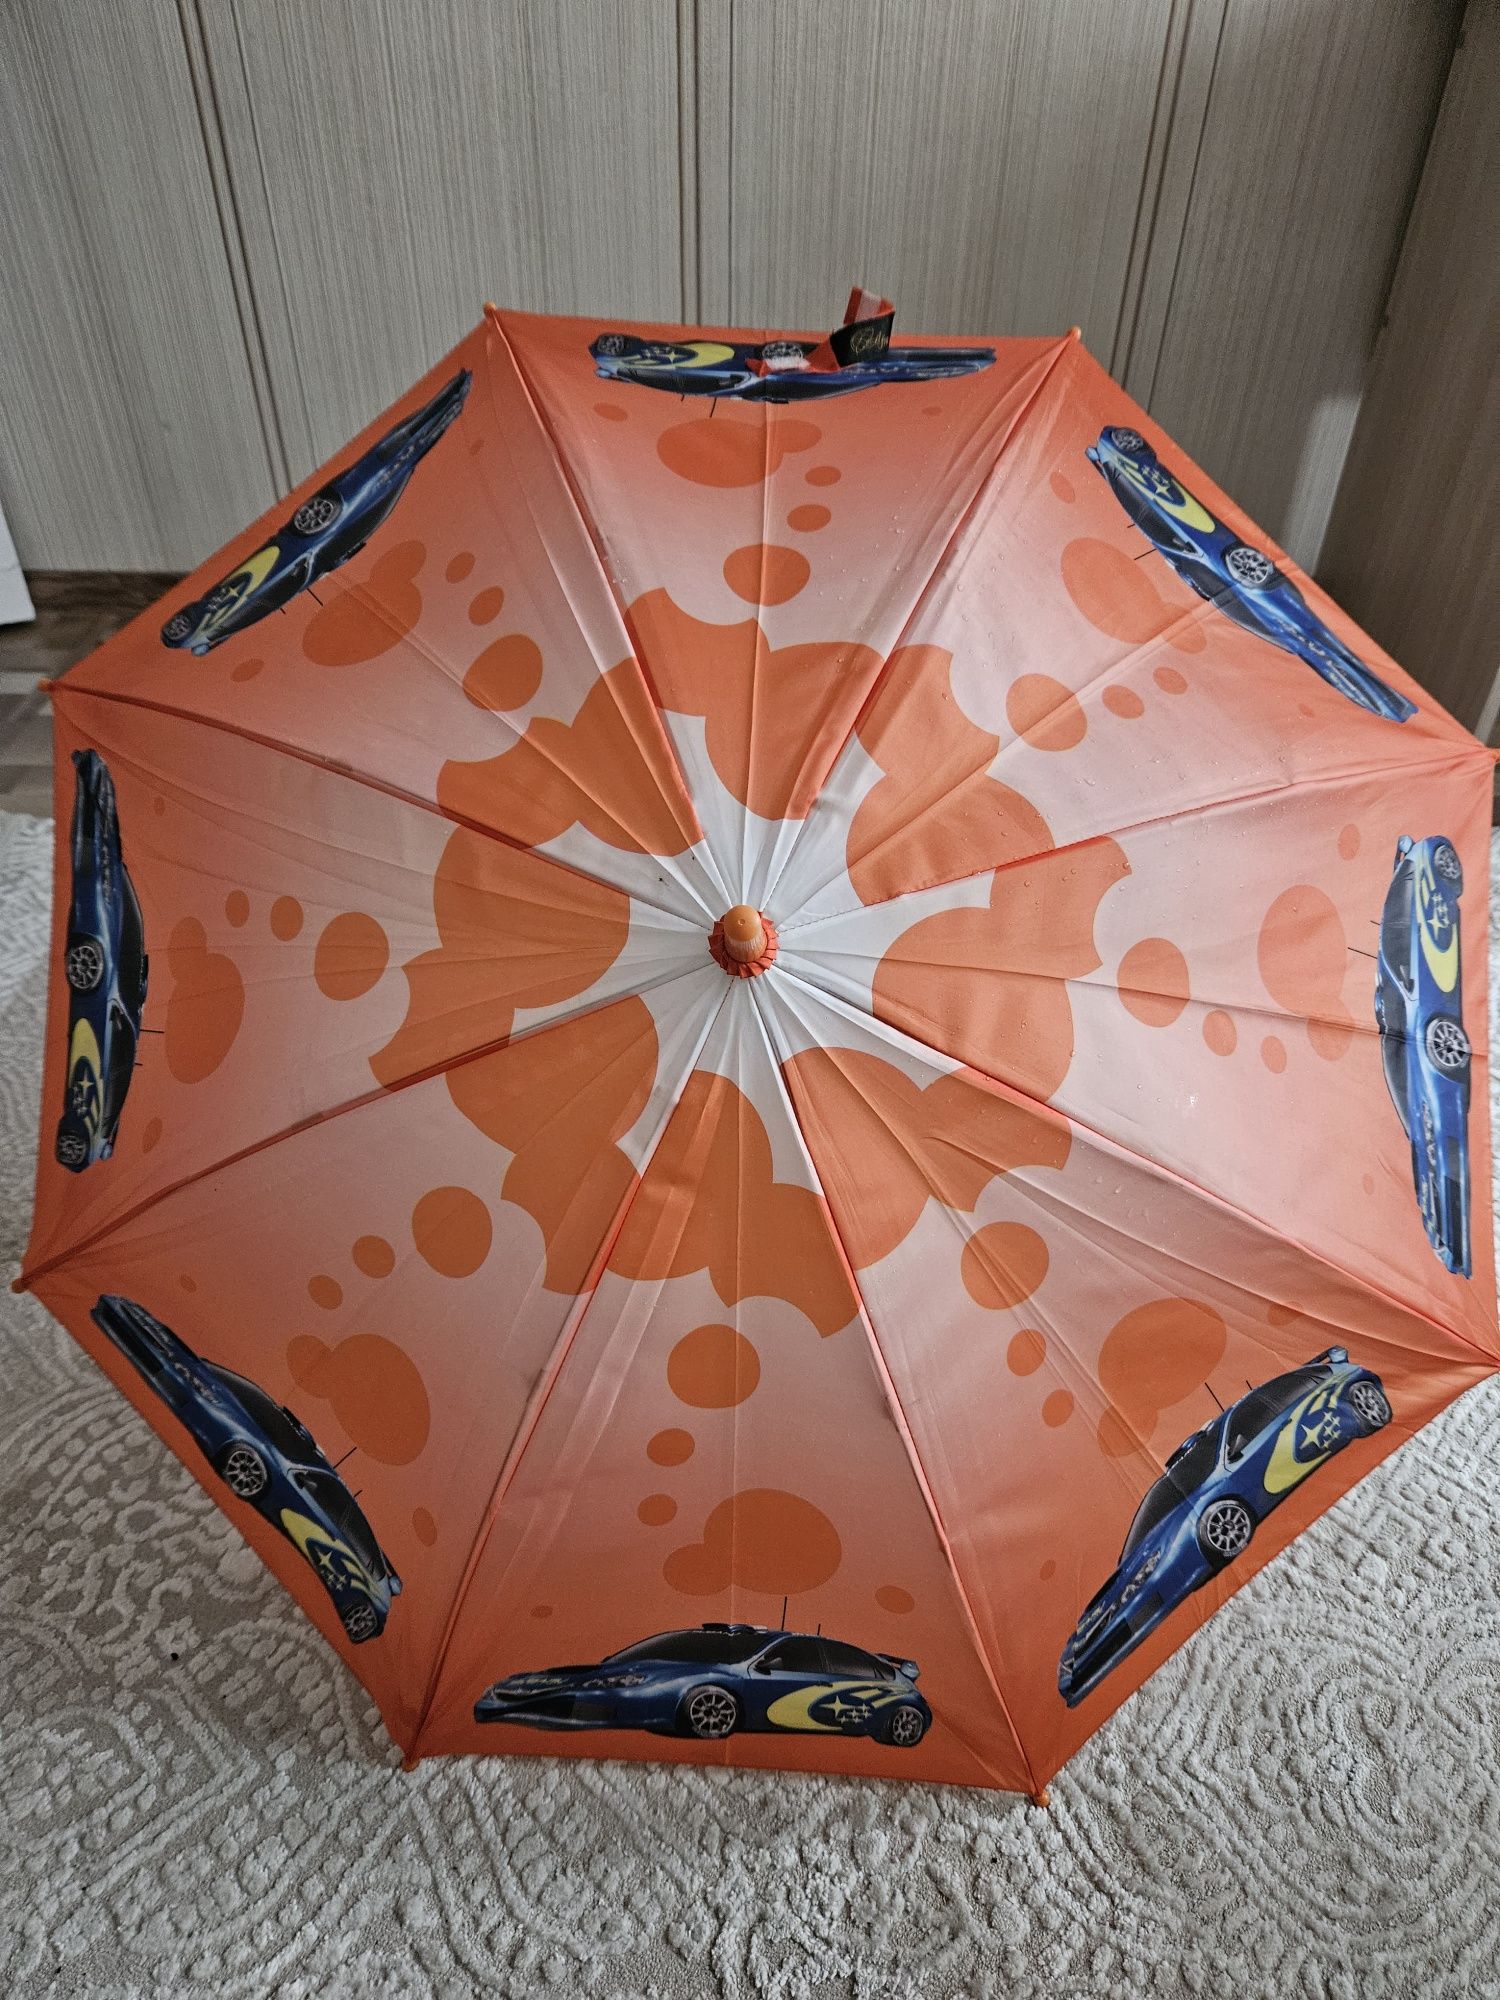 Продам зонт б/у в отличном состоянии